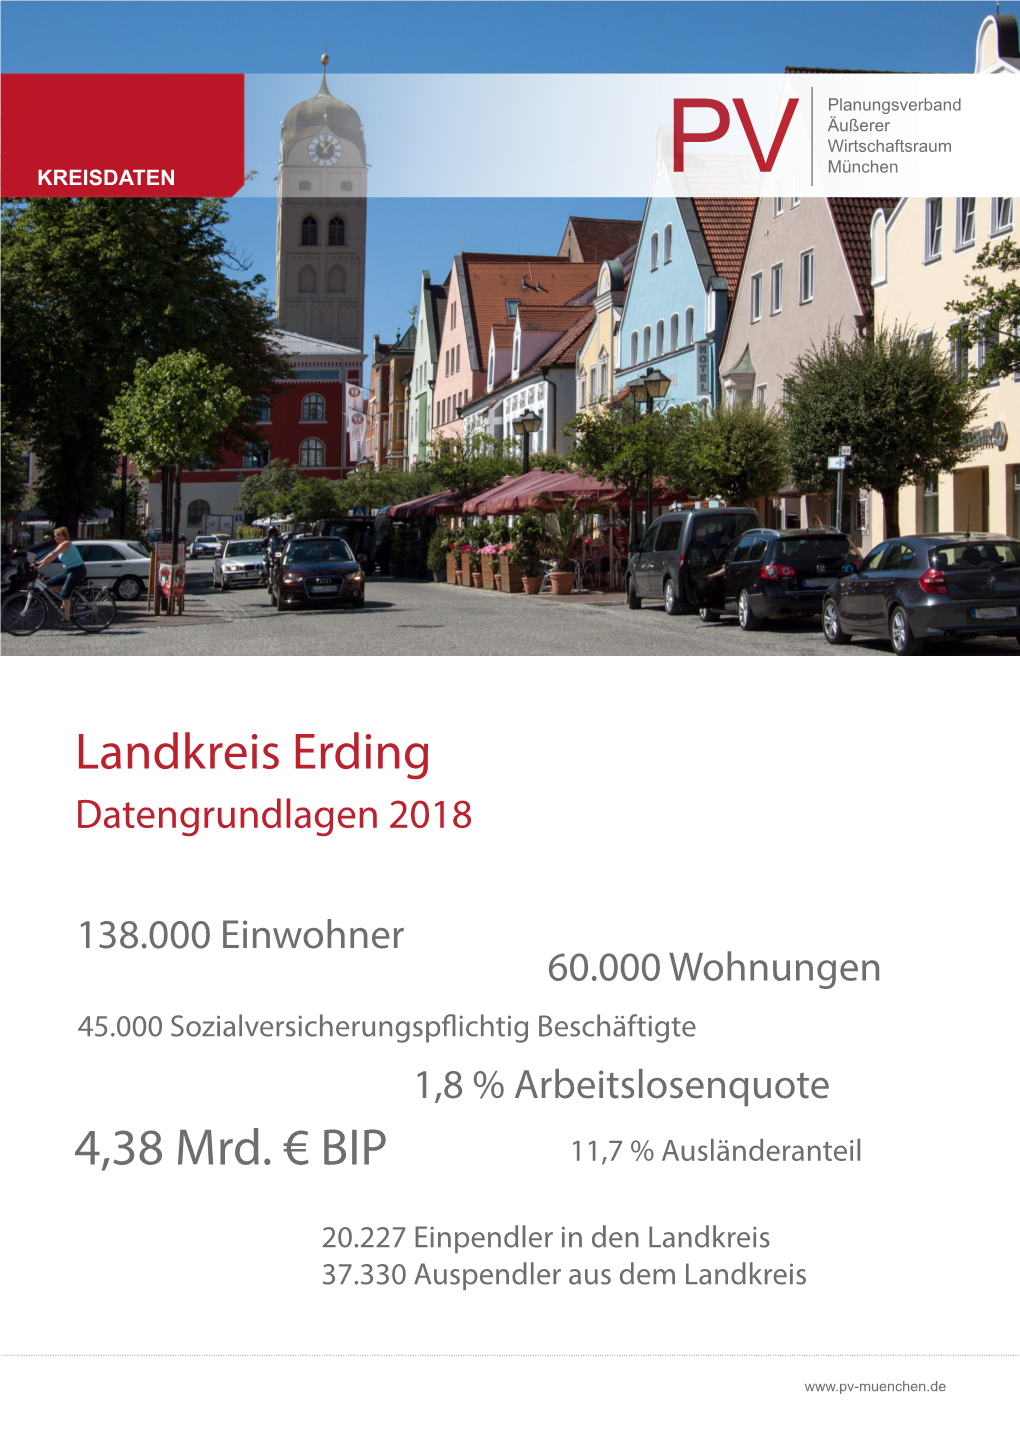 Landkreis Erding 4,38 Mrd. €